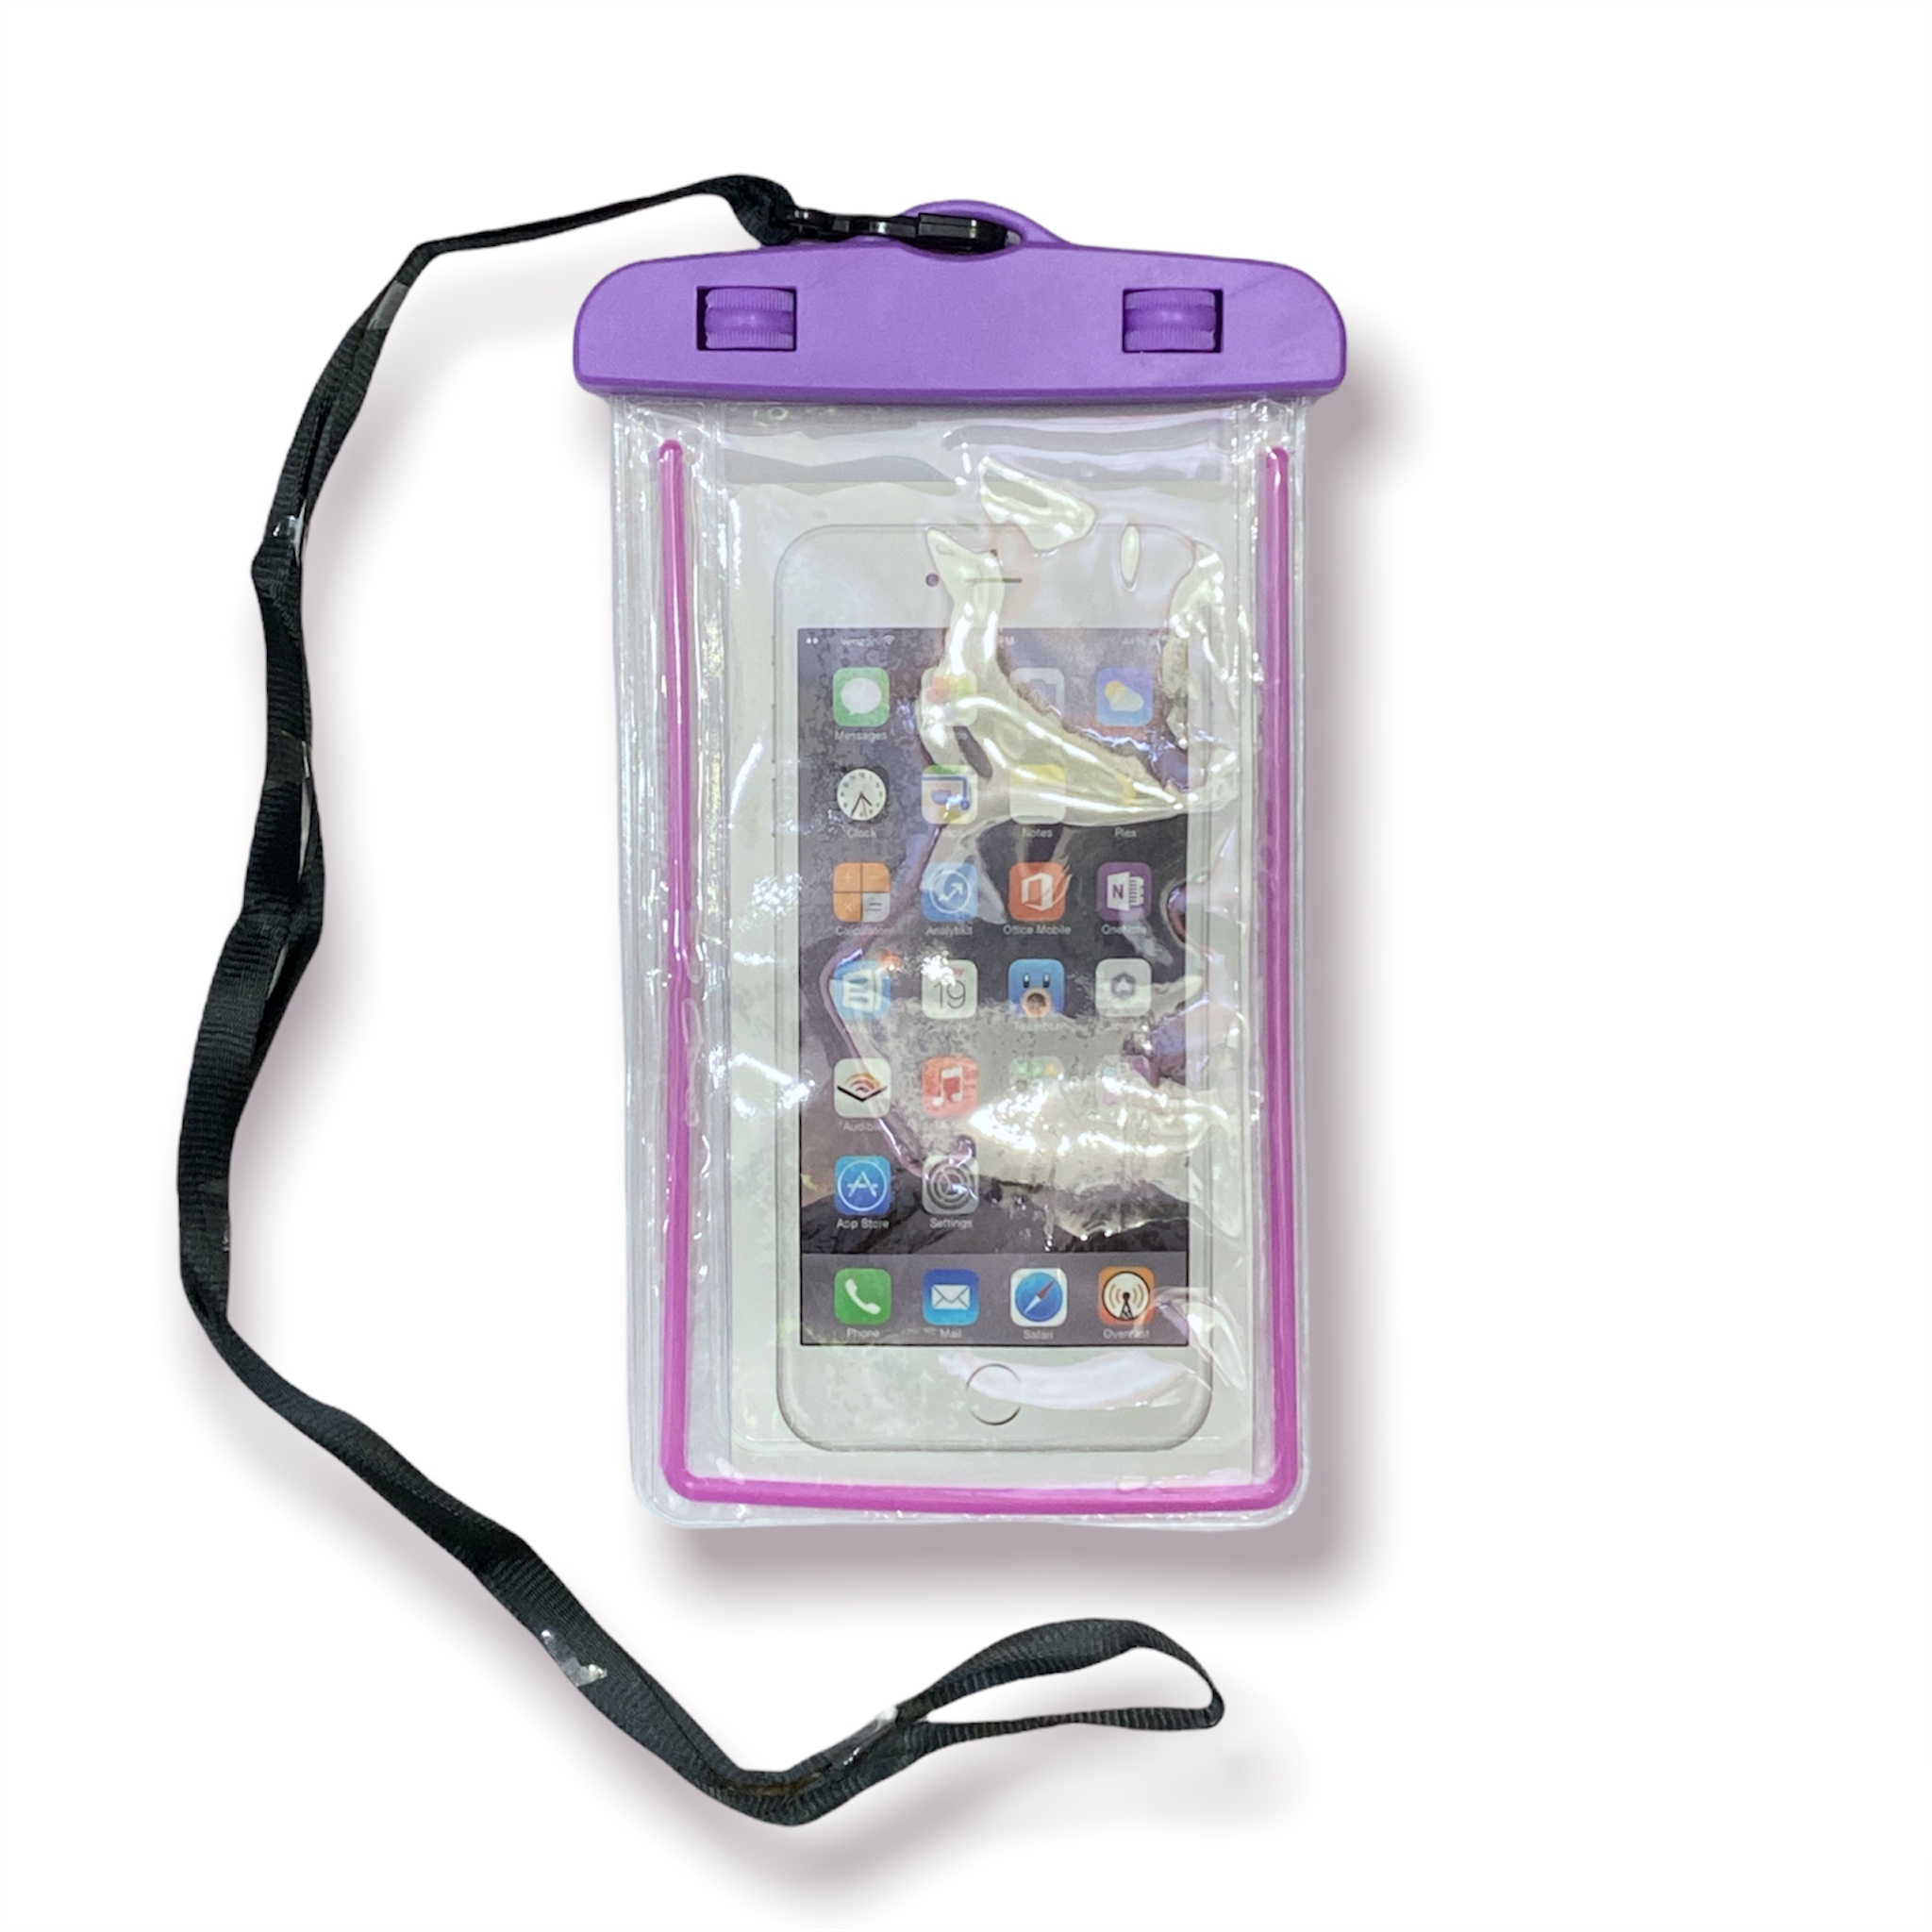 Funda impermeable ( cover) protector de celular contra agua - Locos Phone  ..:: Tienda de celulares y accesorios en Santiago, República Dominicana ::..